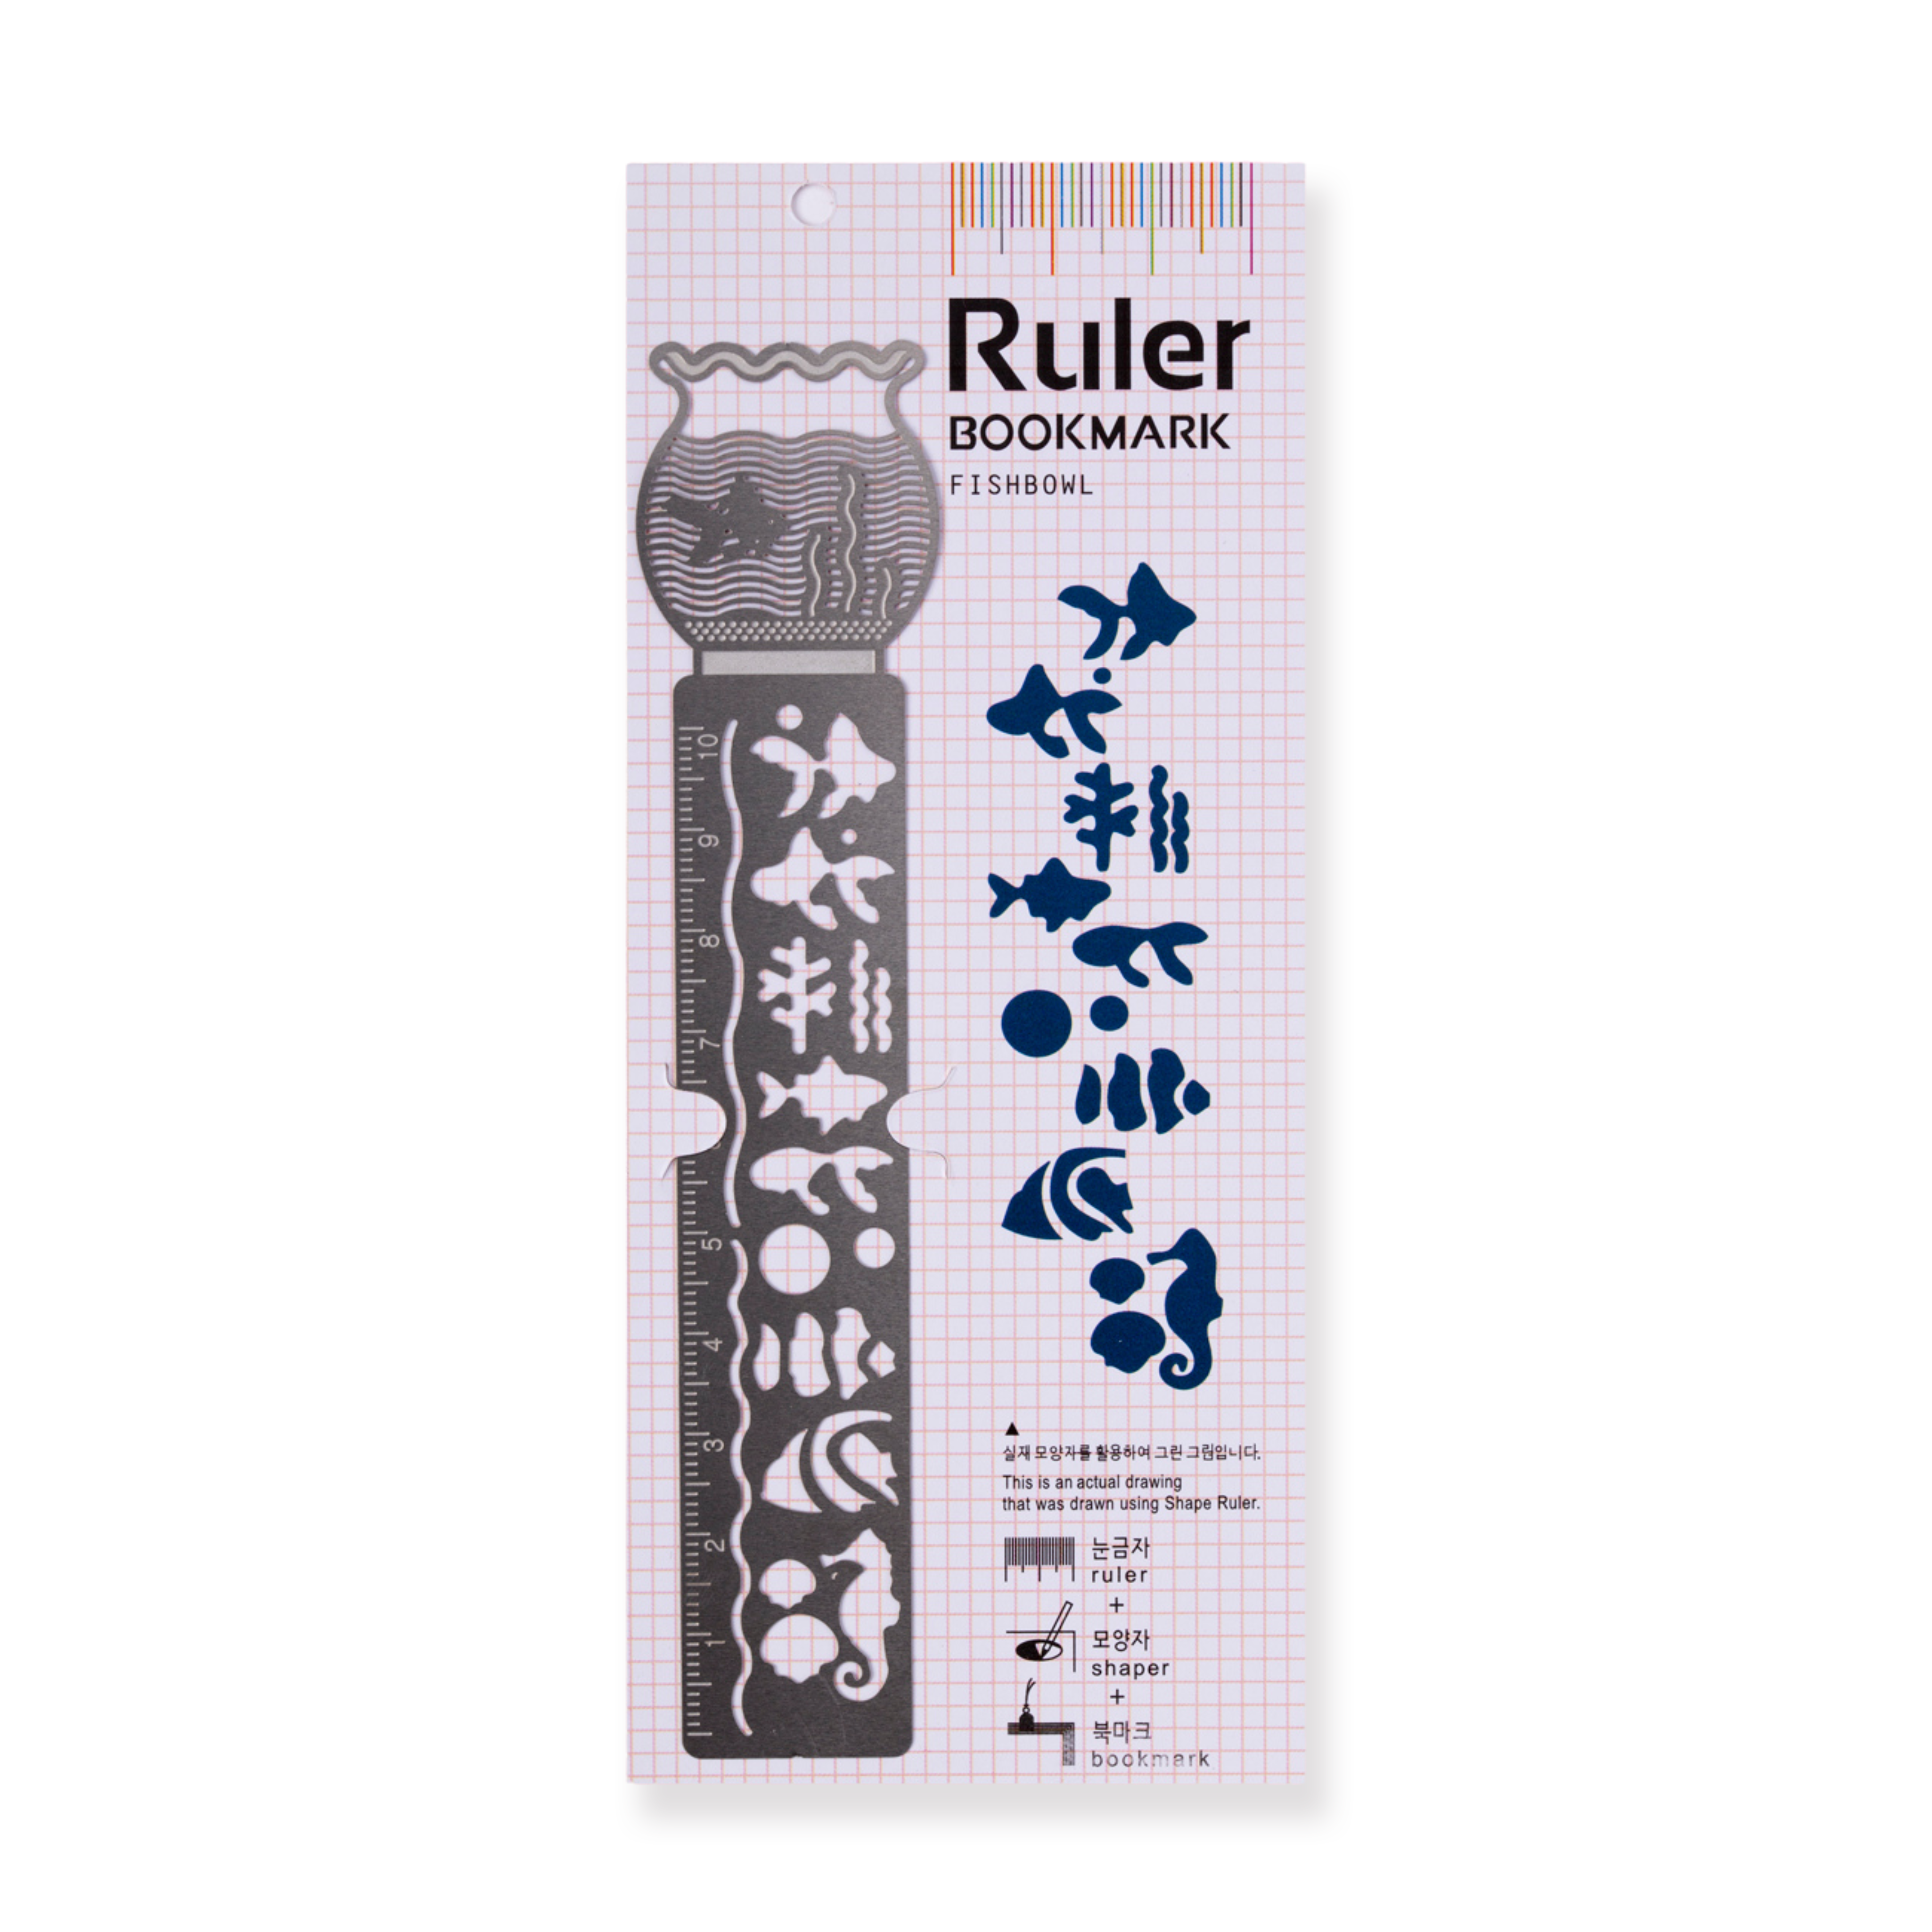 Ruler Bookmark - Fishbowl